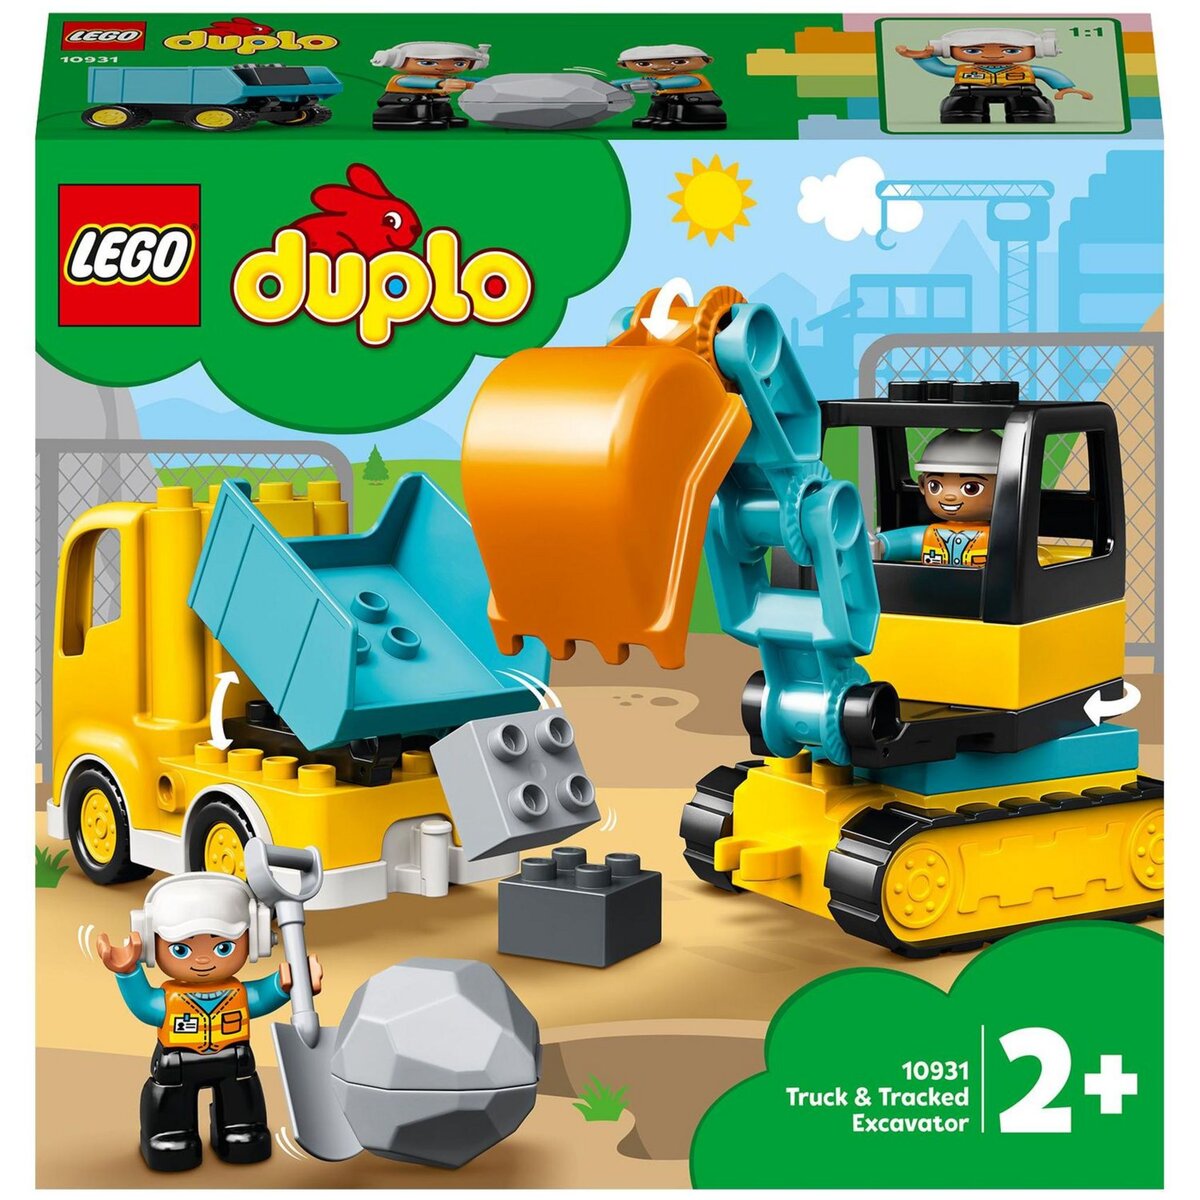 LEGO 10969 Duplo Town Le Camion de Pompiers, Jouet de Construction